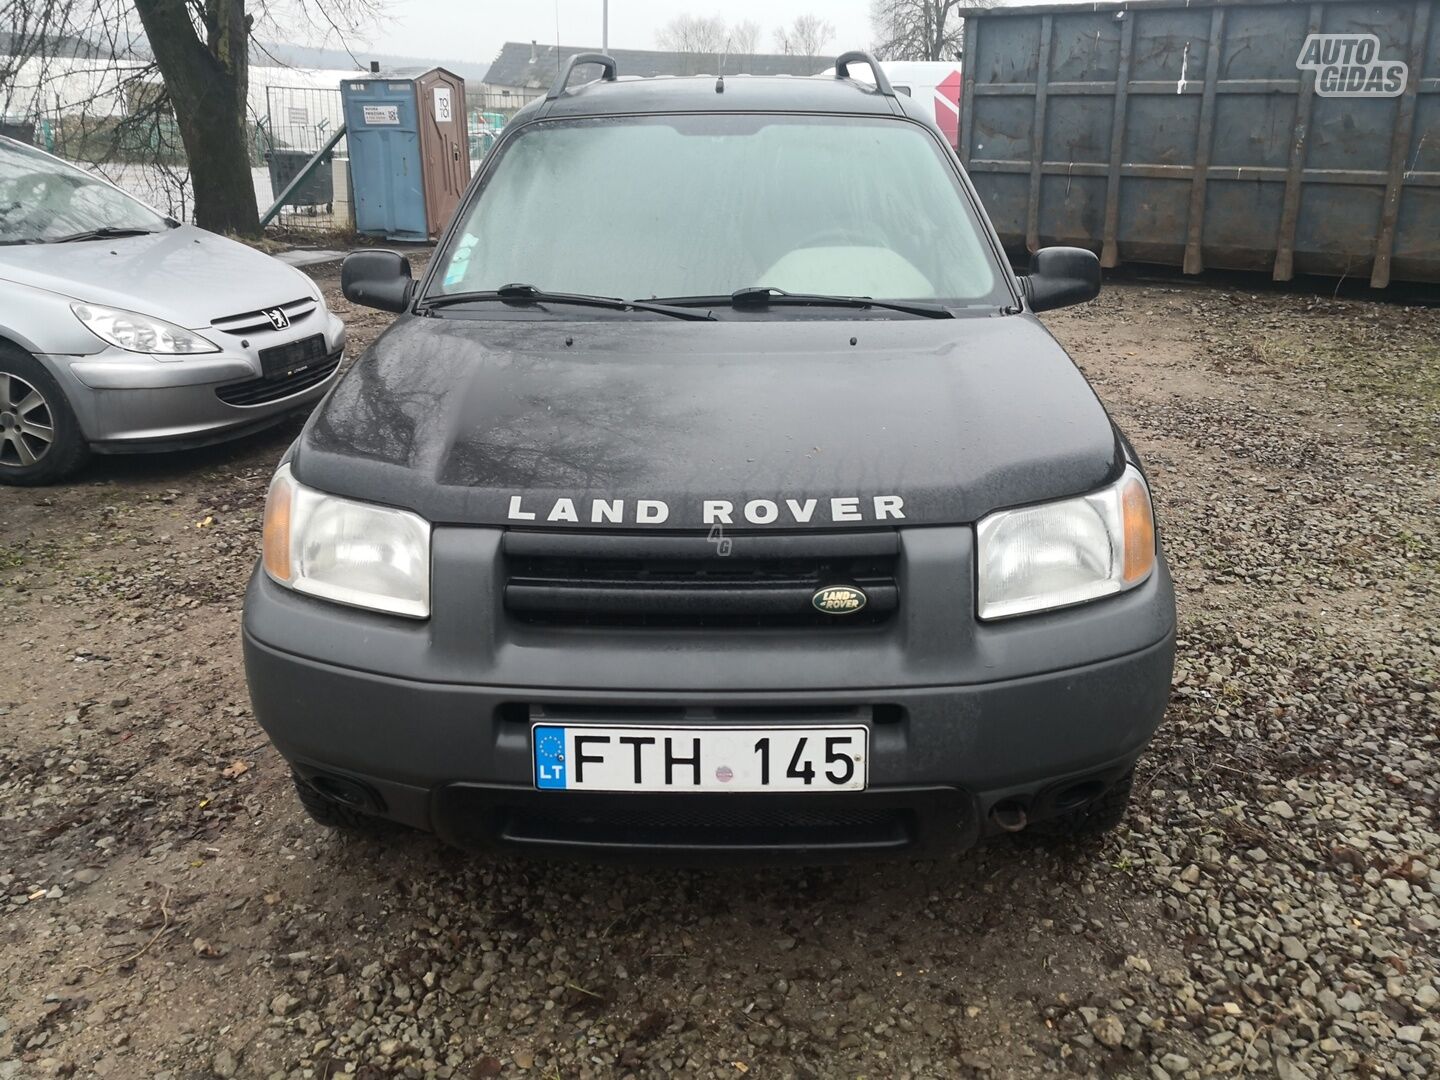 Land Rover Freelander 1999 г запчясти